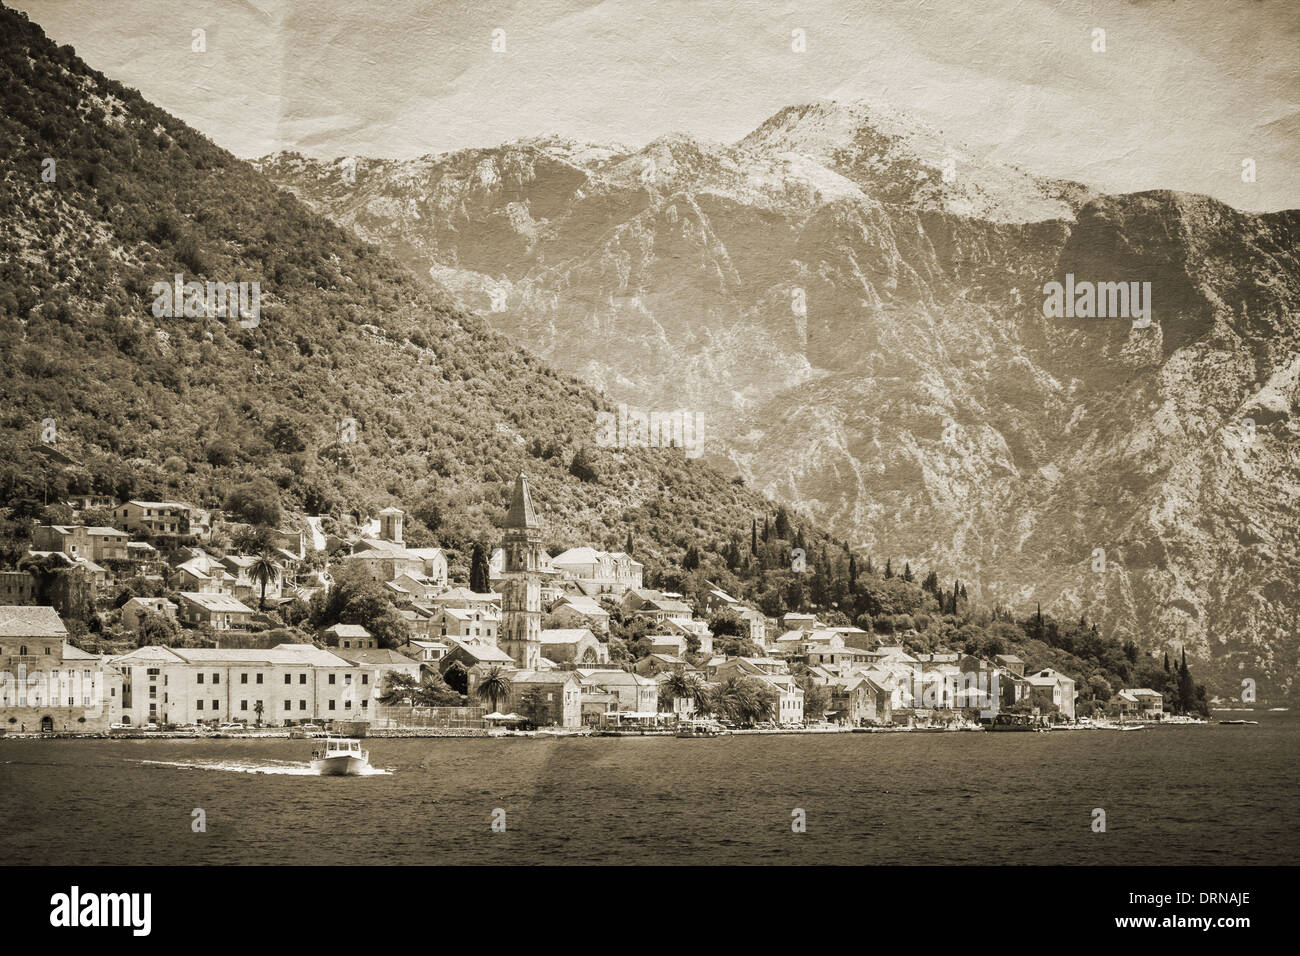 Vintage photo stylisée de la ville de Perast, baie de Kotor, Monténégro Banque D'Images